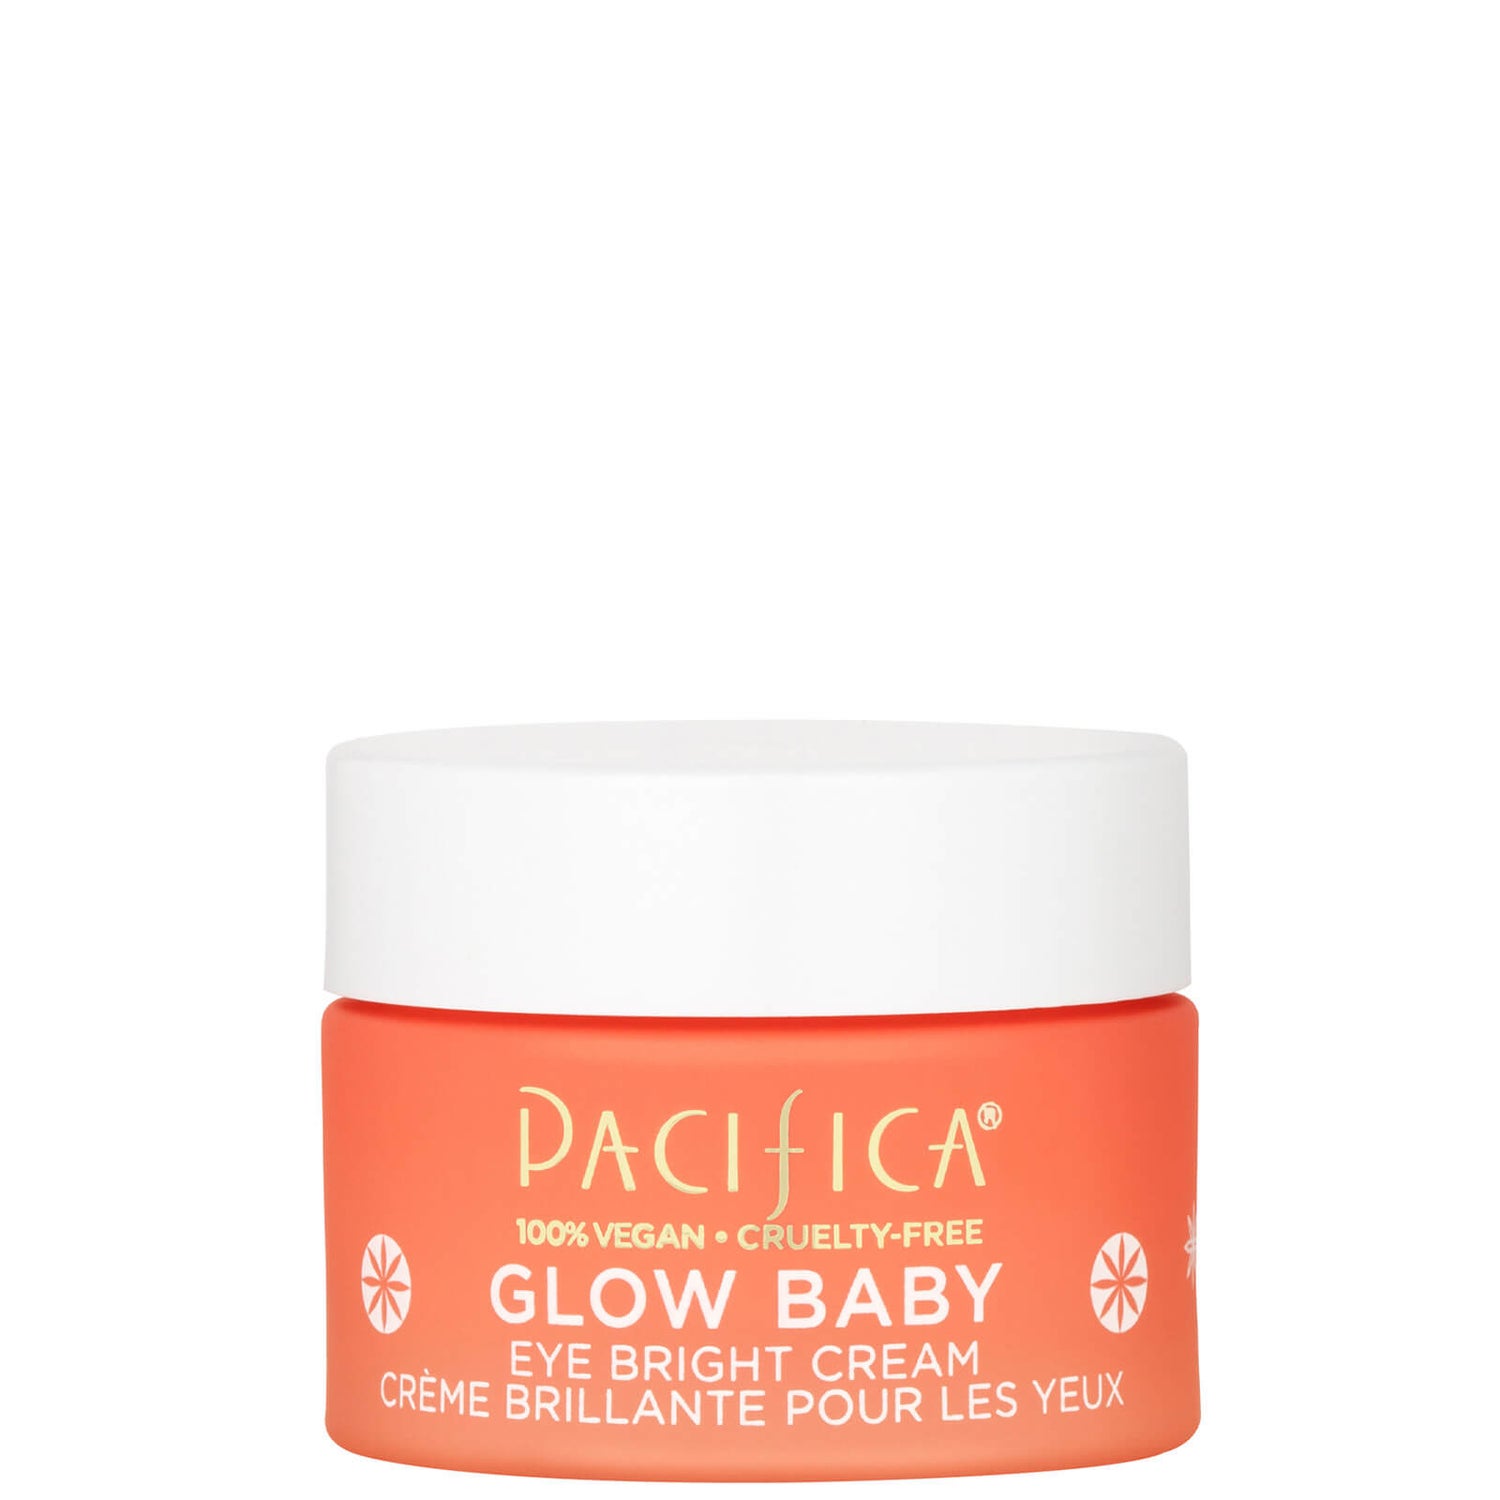 Pacifica Glow Baby Eye Bright Cream 15ml